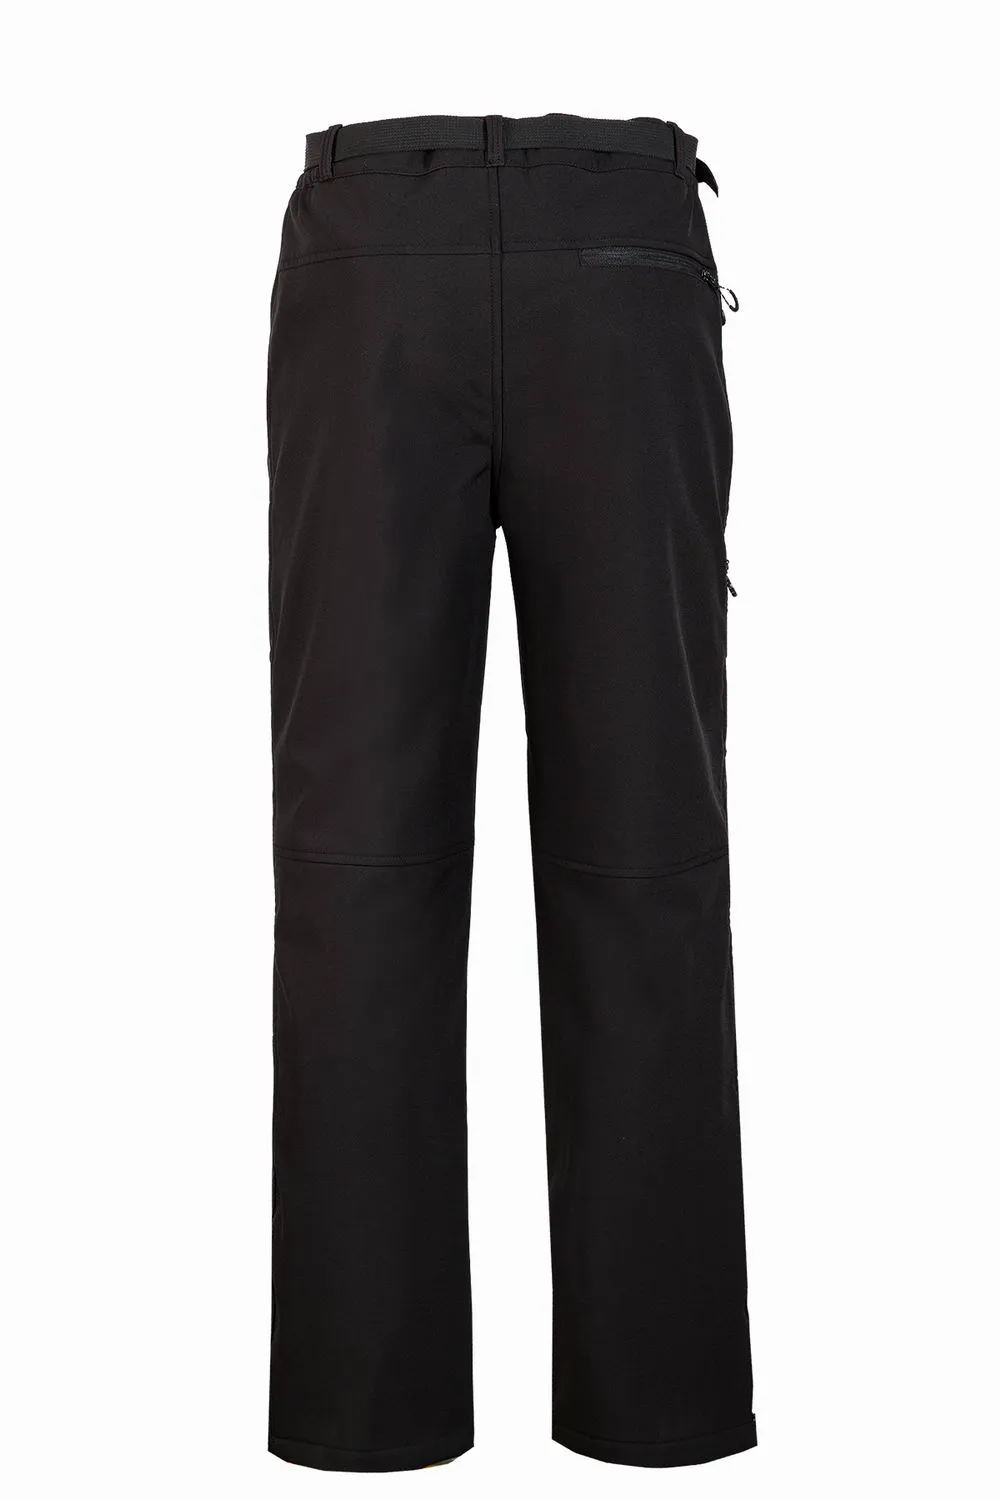 2021 nouveau Le pantalon Helly pour hommes Mode Casual Chaud Coupe-Vent Ski Manteaux Extérieur Denali Polaire Pantalon Hansen Costumes S-3XL 1612233O